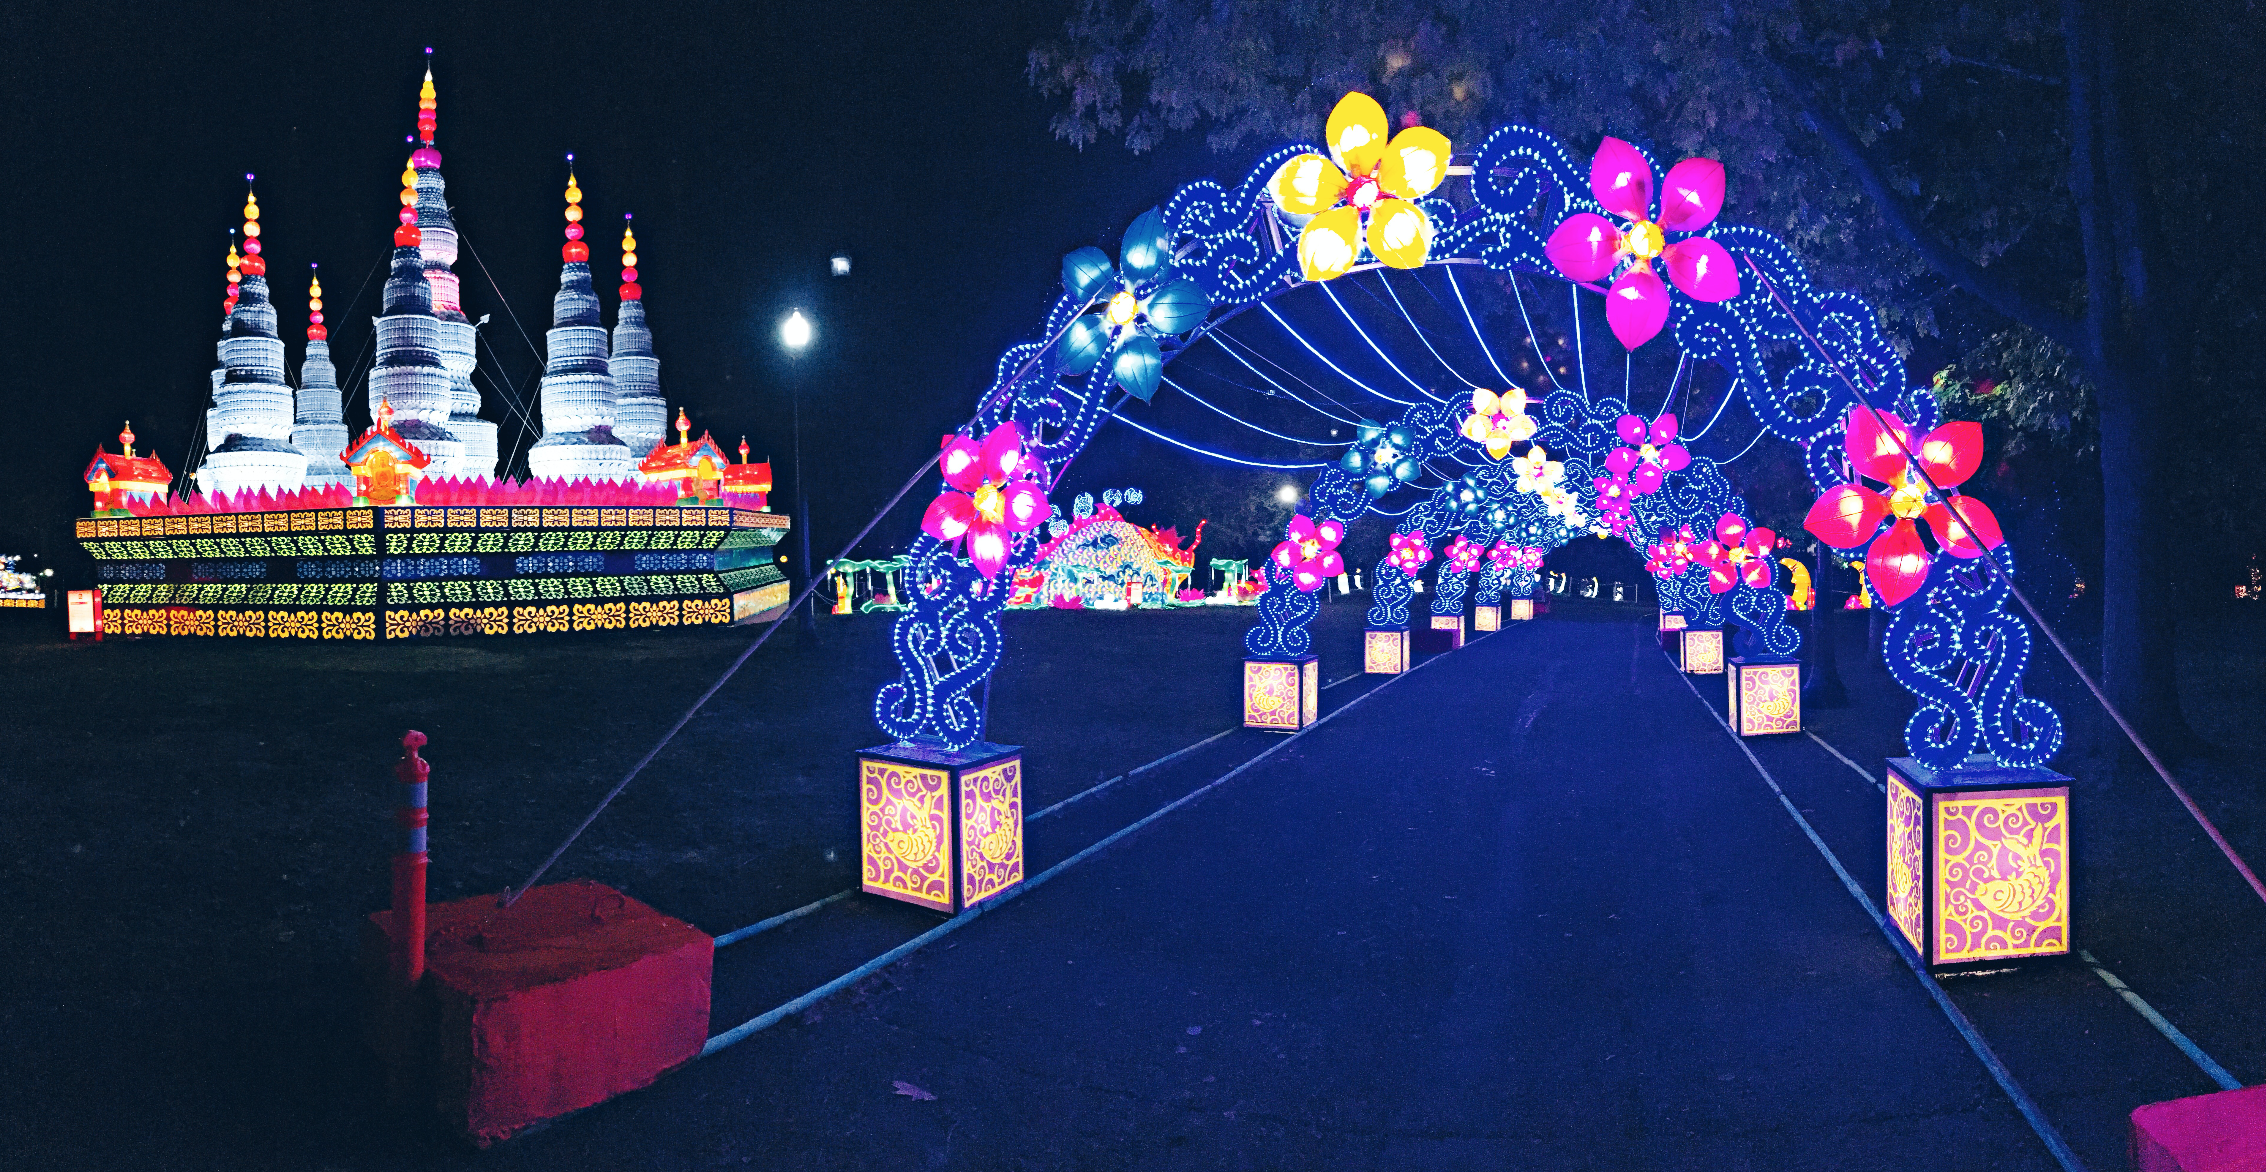 chinese lantern festival spokane 2016